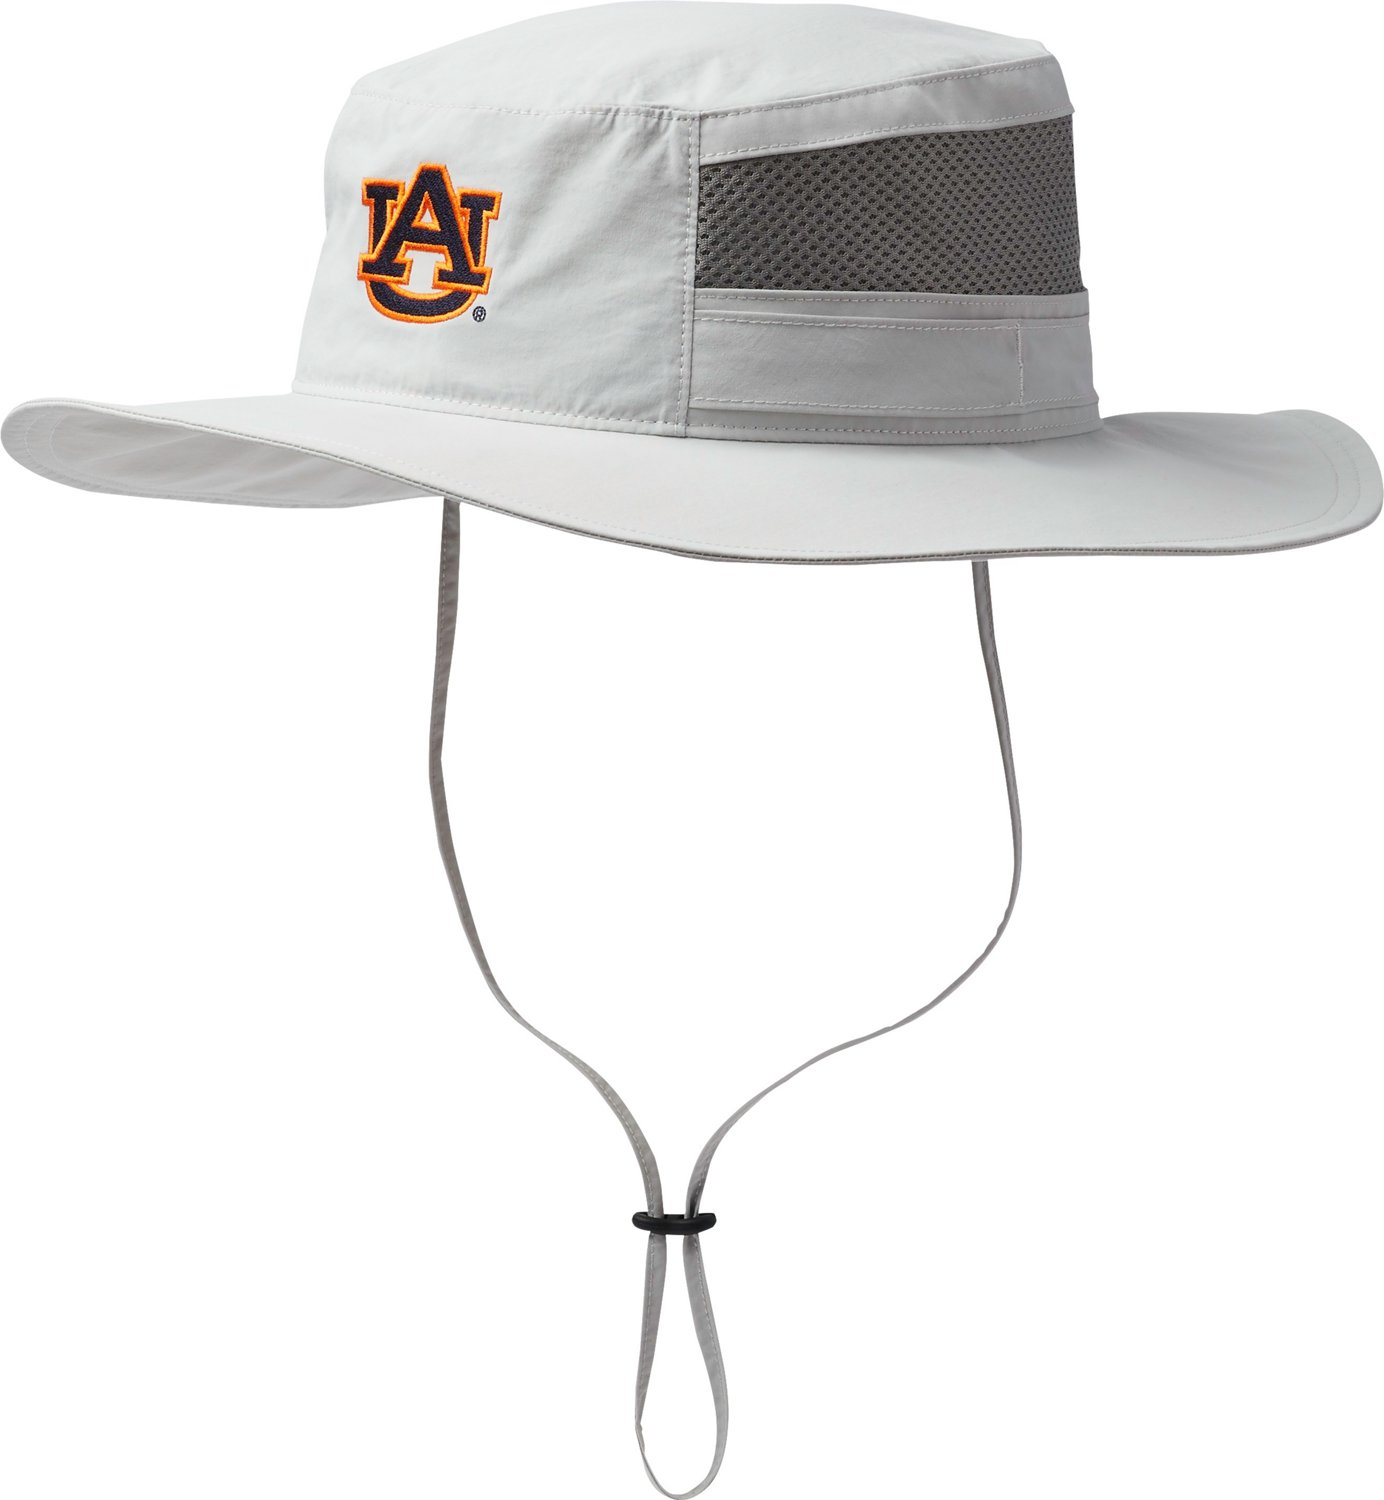 Columbia Sportswear Men's Auburn University Bora Bora Booney II Hat